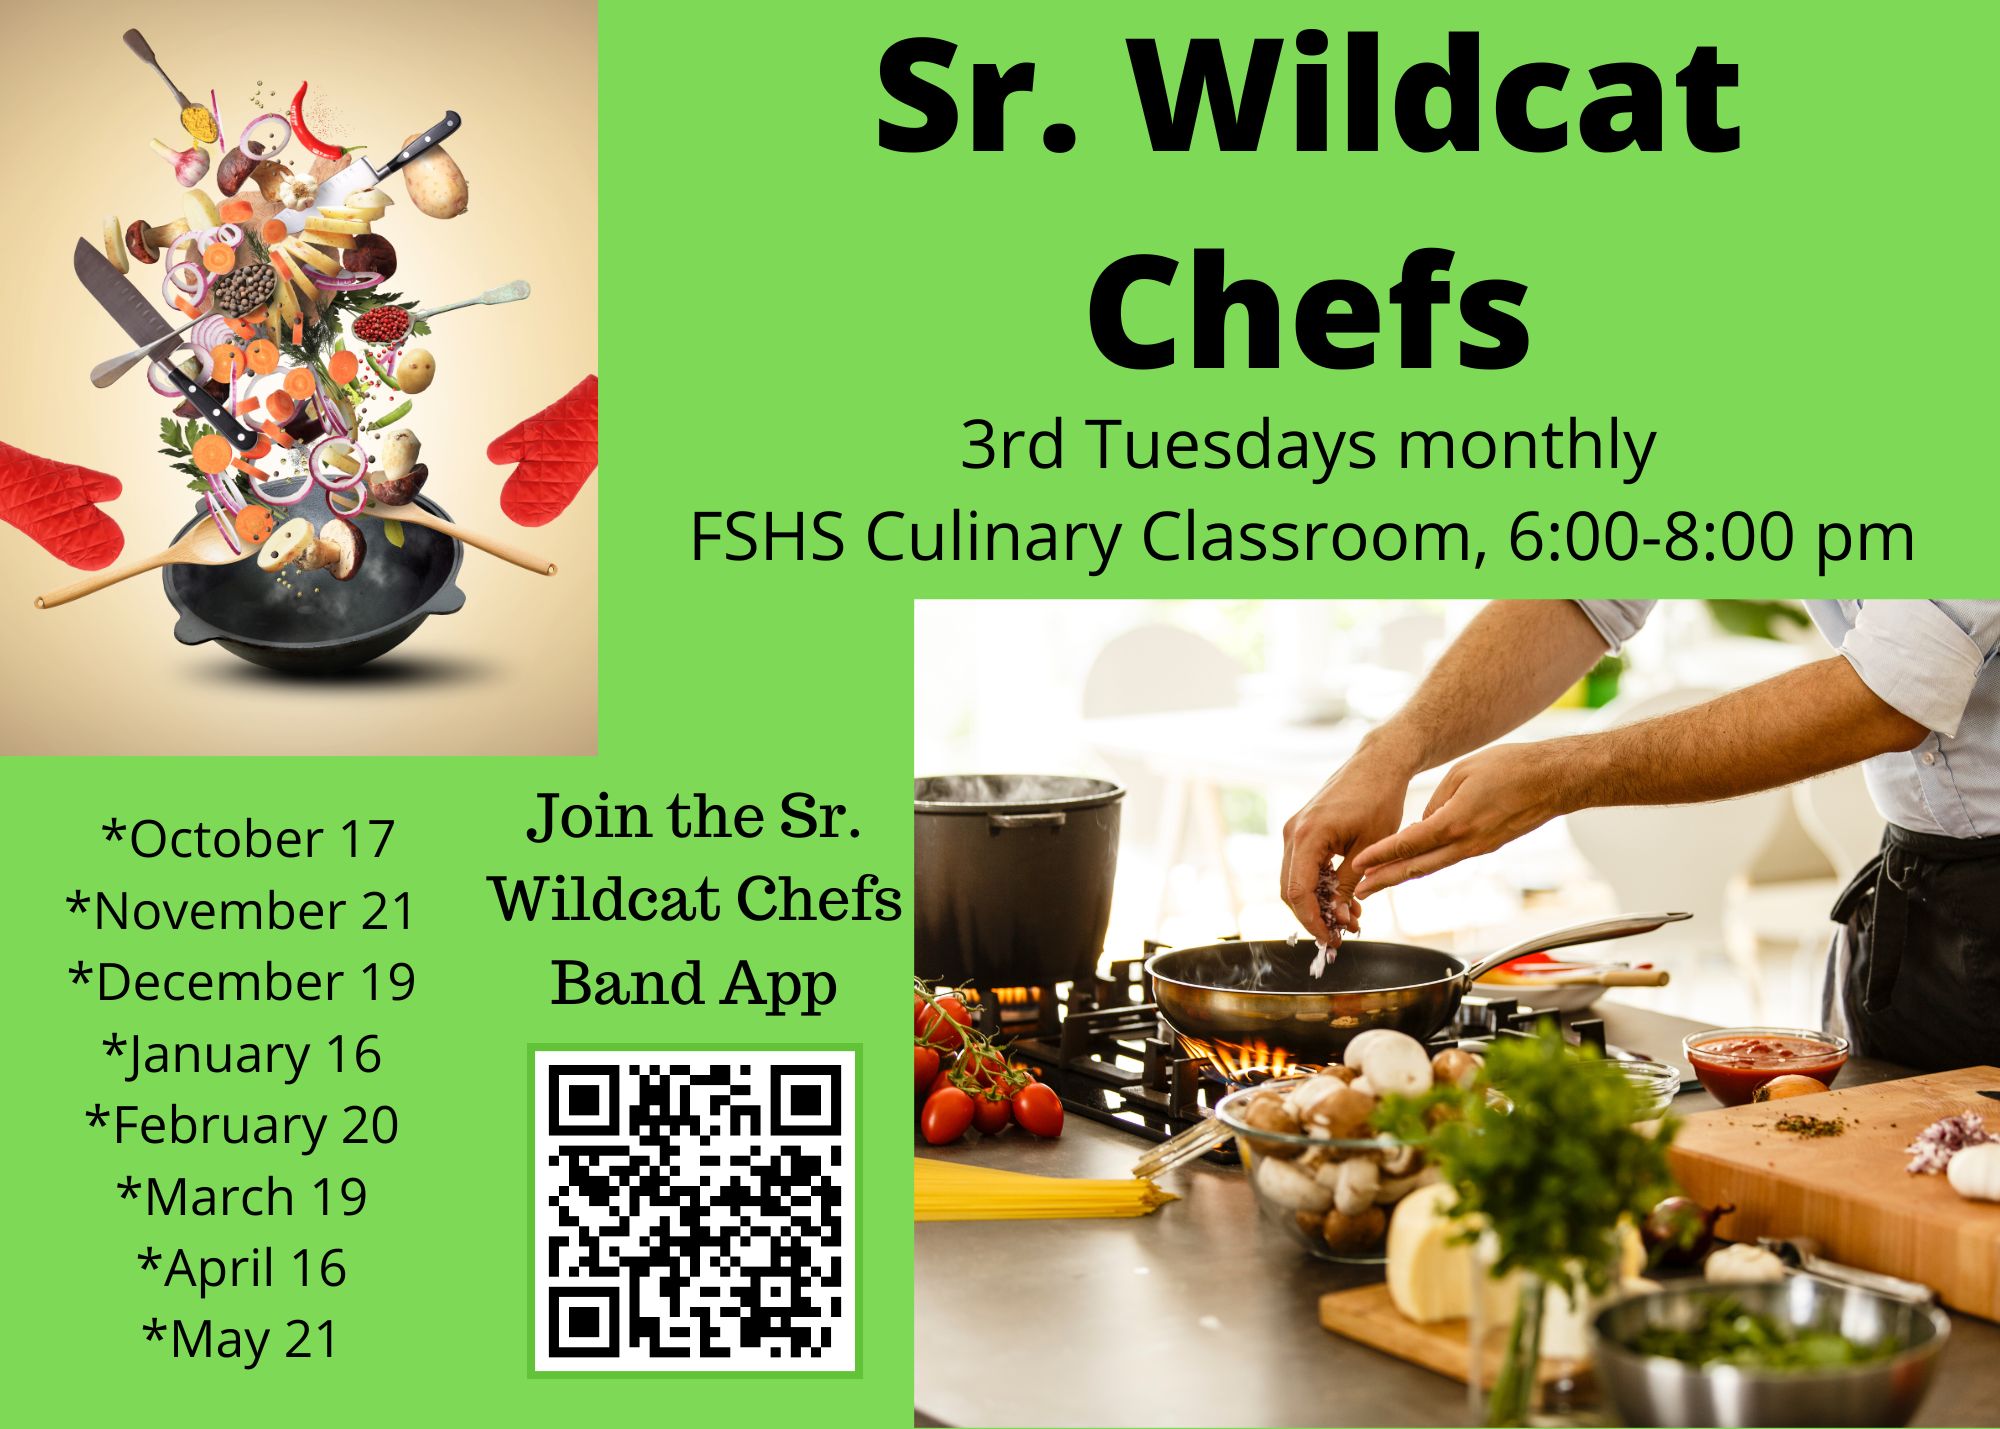 Sr. Wildcats Schedule